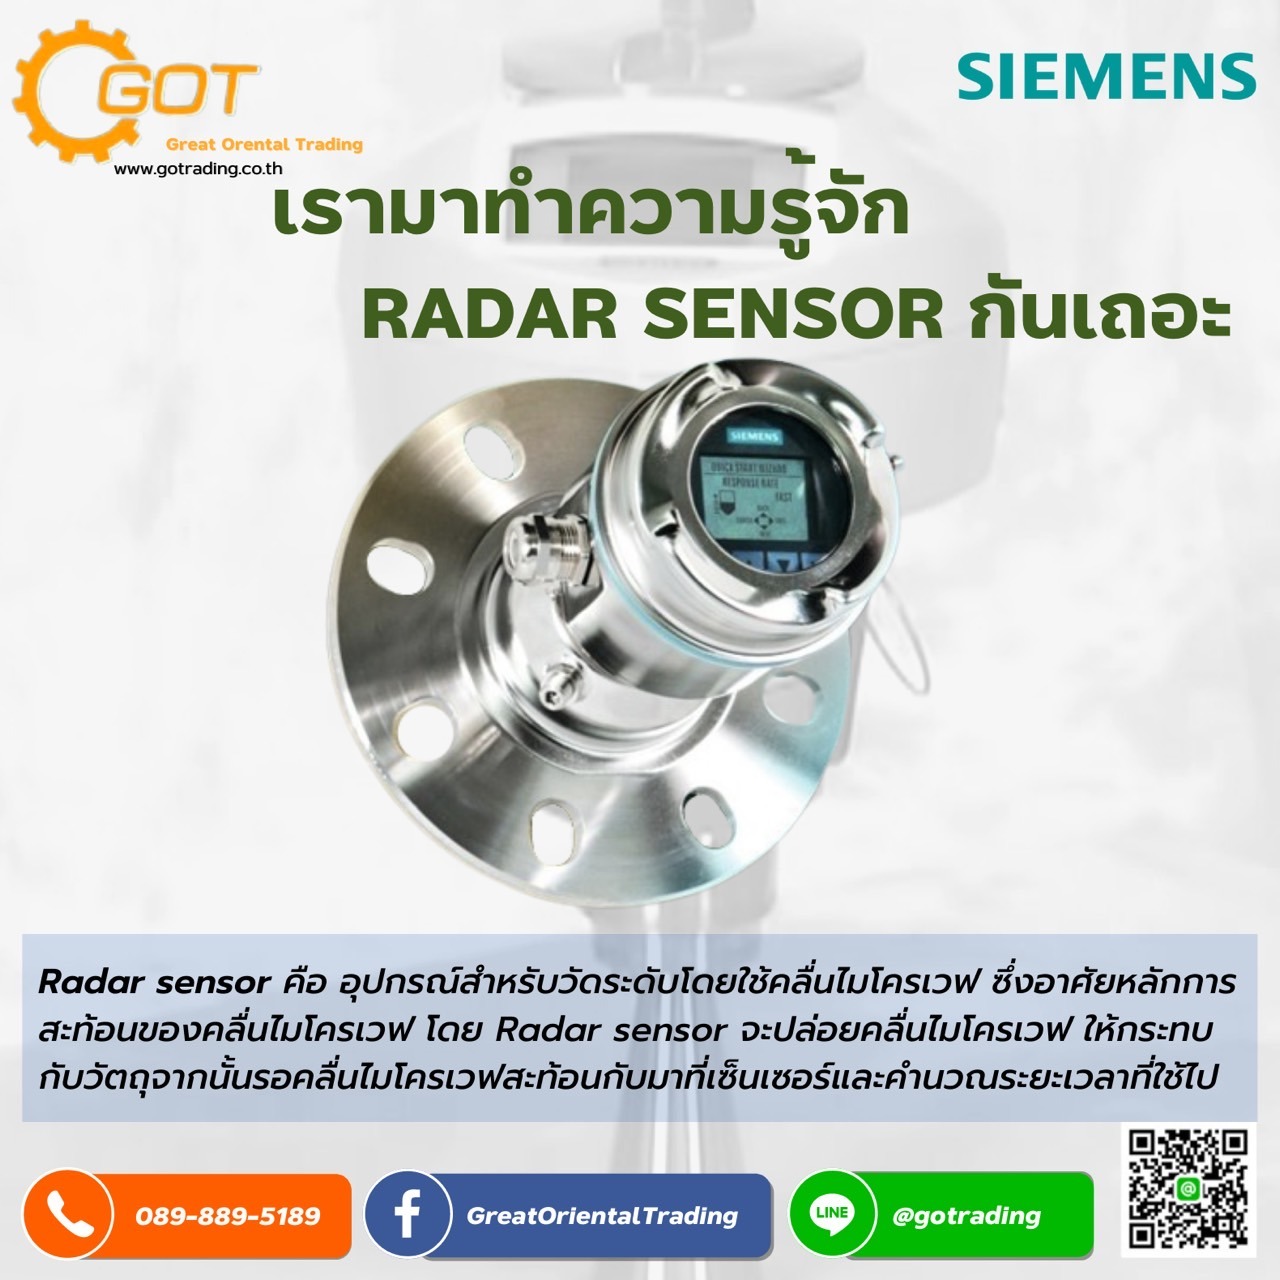 Radar sensorคือ อุปกรณ์สำหรับวัดระดับโดยใช้คลื่นไมโครเวฟ ซึ่งอาศัยหลักการสะท้อนของคลื่นไมโครเวฟ โดย Radar sensor จะปล่อยคลื่นไมโครเวฟ ให้กระทบกับวัตถุจากนั้นรอคลื่นไมโครเวฟสะท้อนกับมาที่เซ็นเซอร์และคำนวณระยะเวลาที่ใช้ไป 